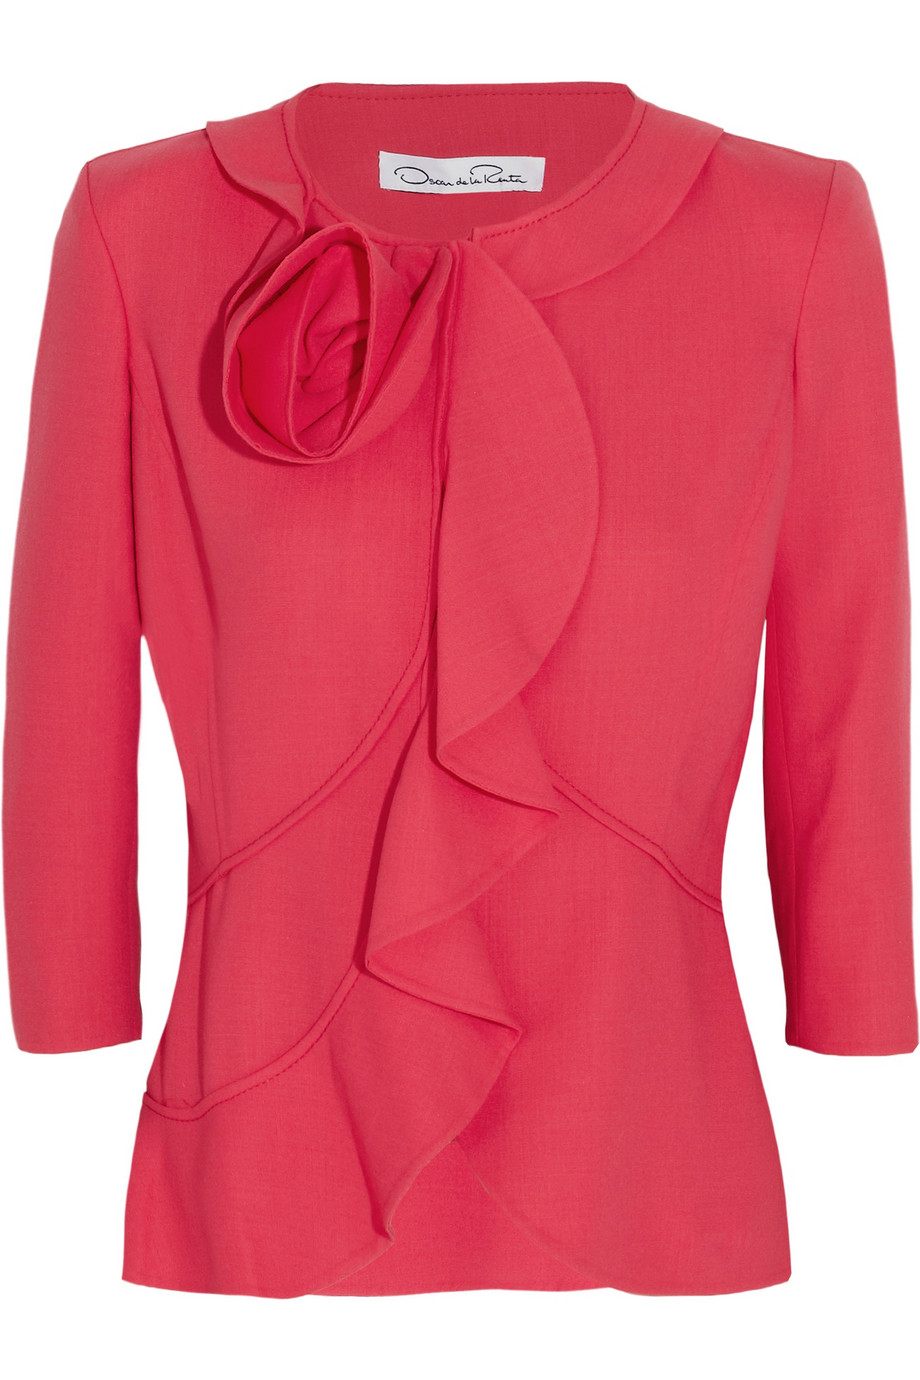 Lyst - Oscar De La Renta Stretchwool Jersey Jacket in Pink